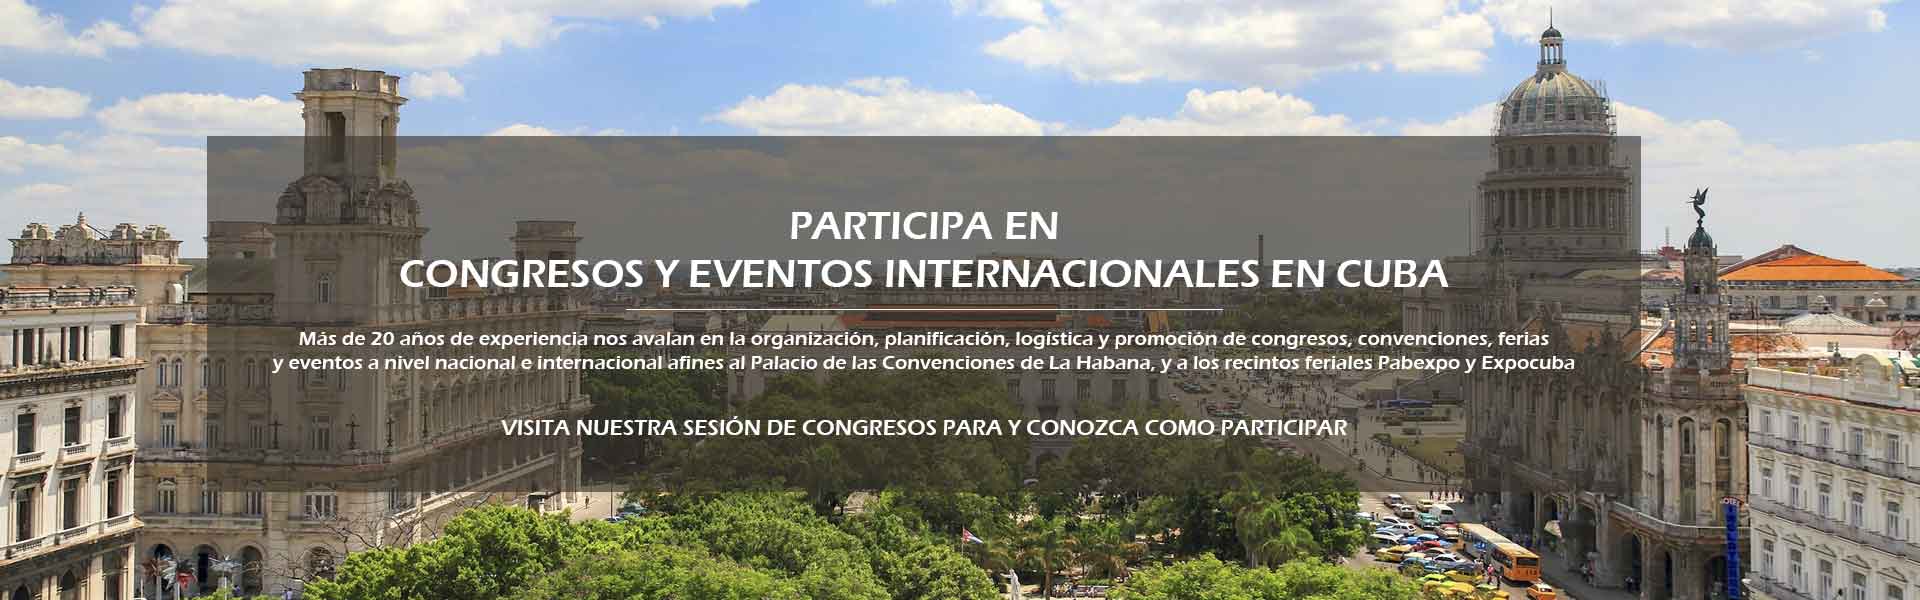 Congresos, Ferias, Eventos Internacionales en Cuba